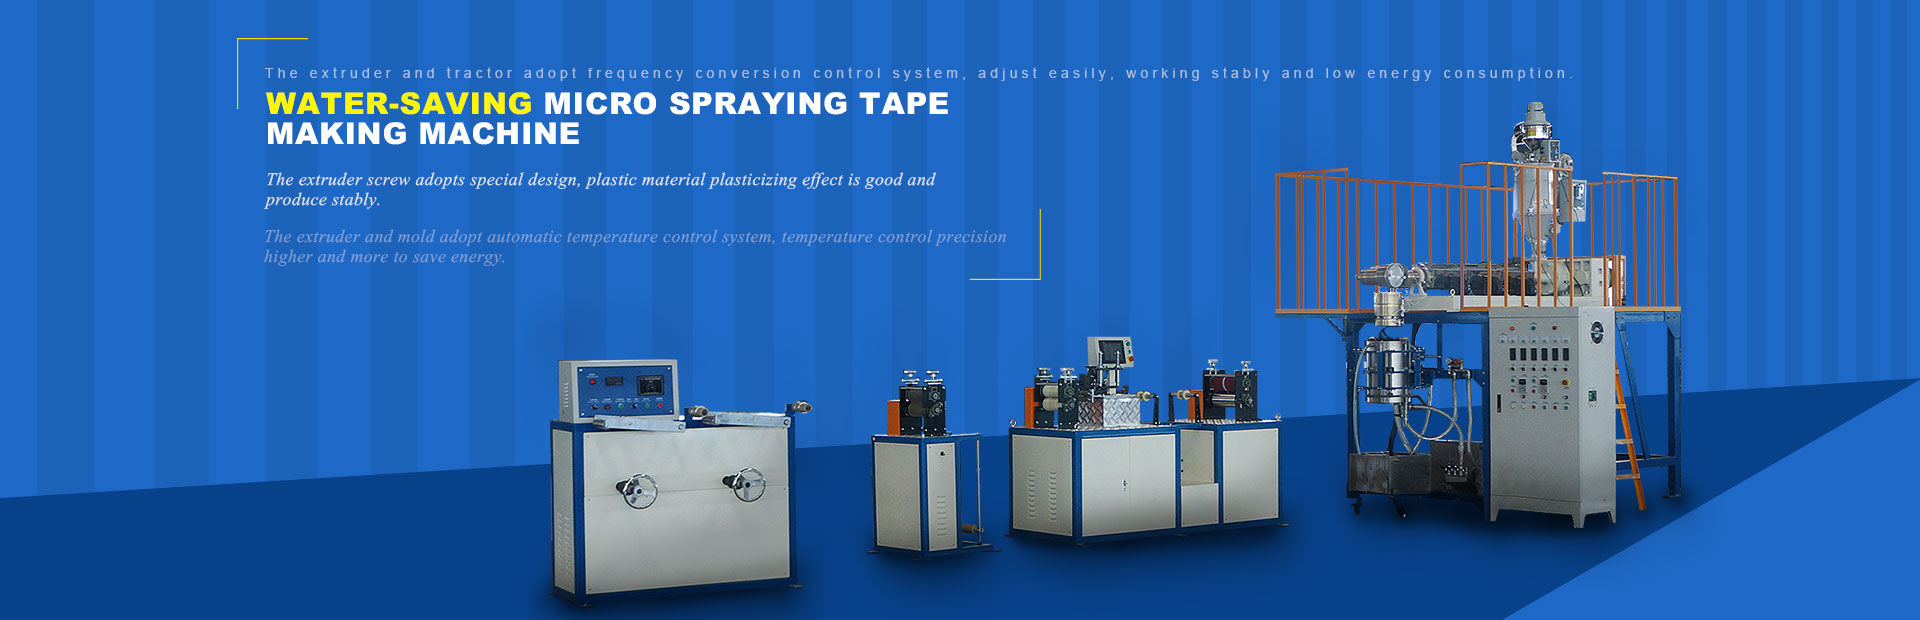 micro spraying water tape making machine